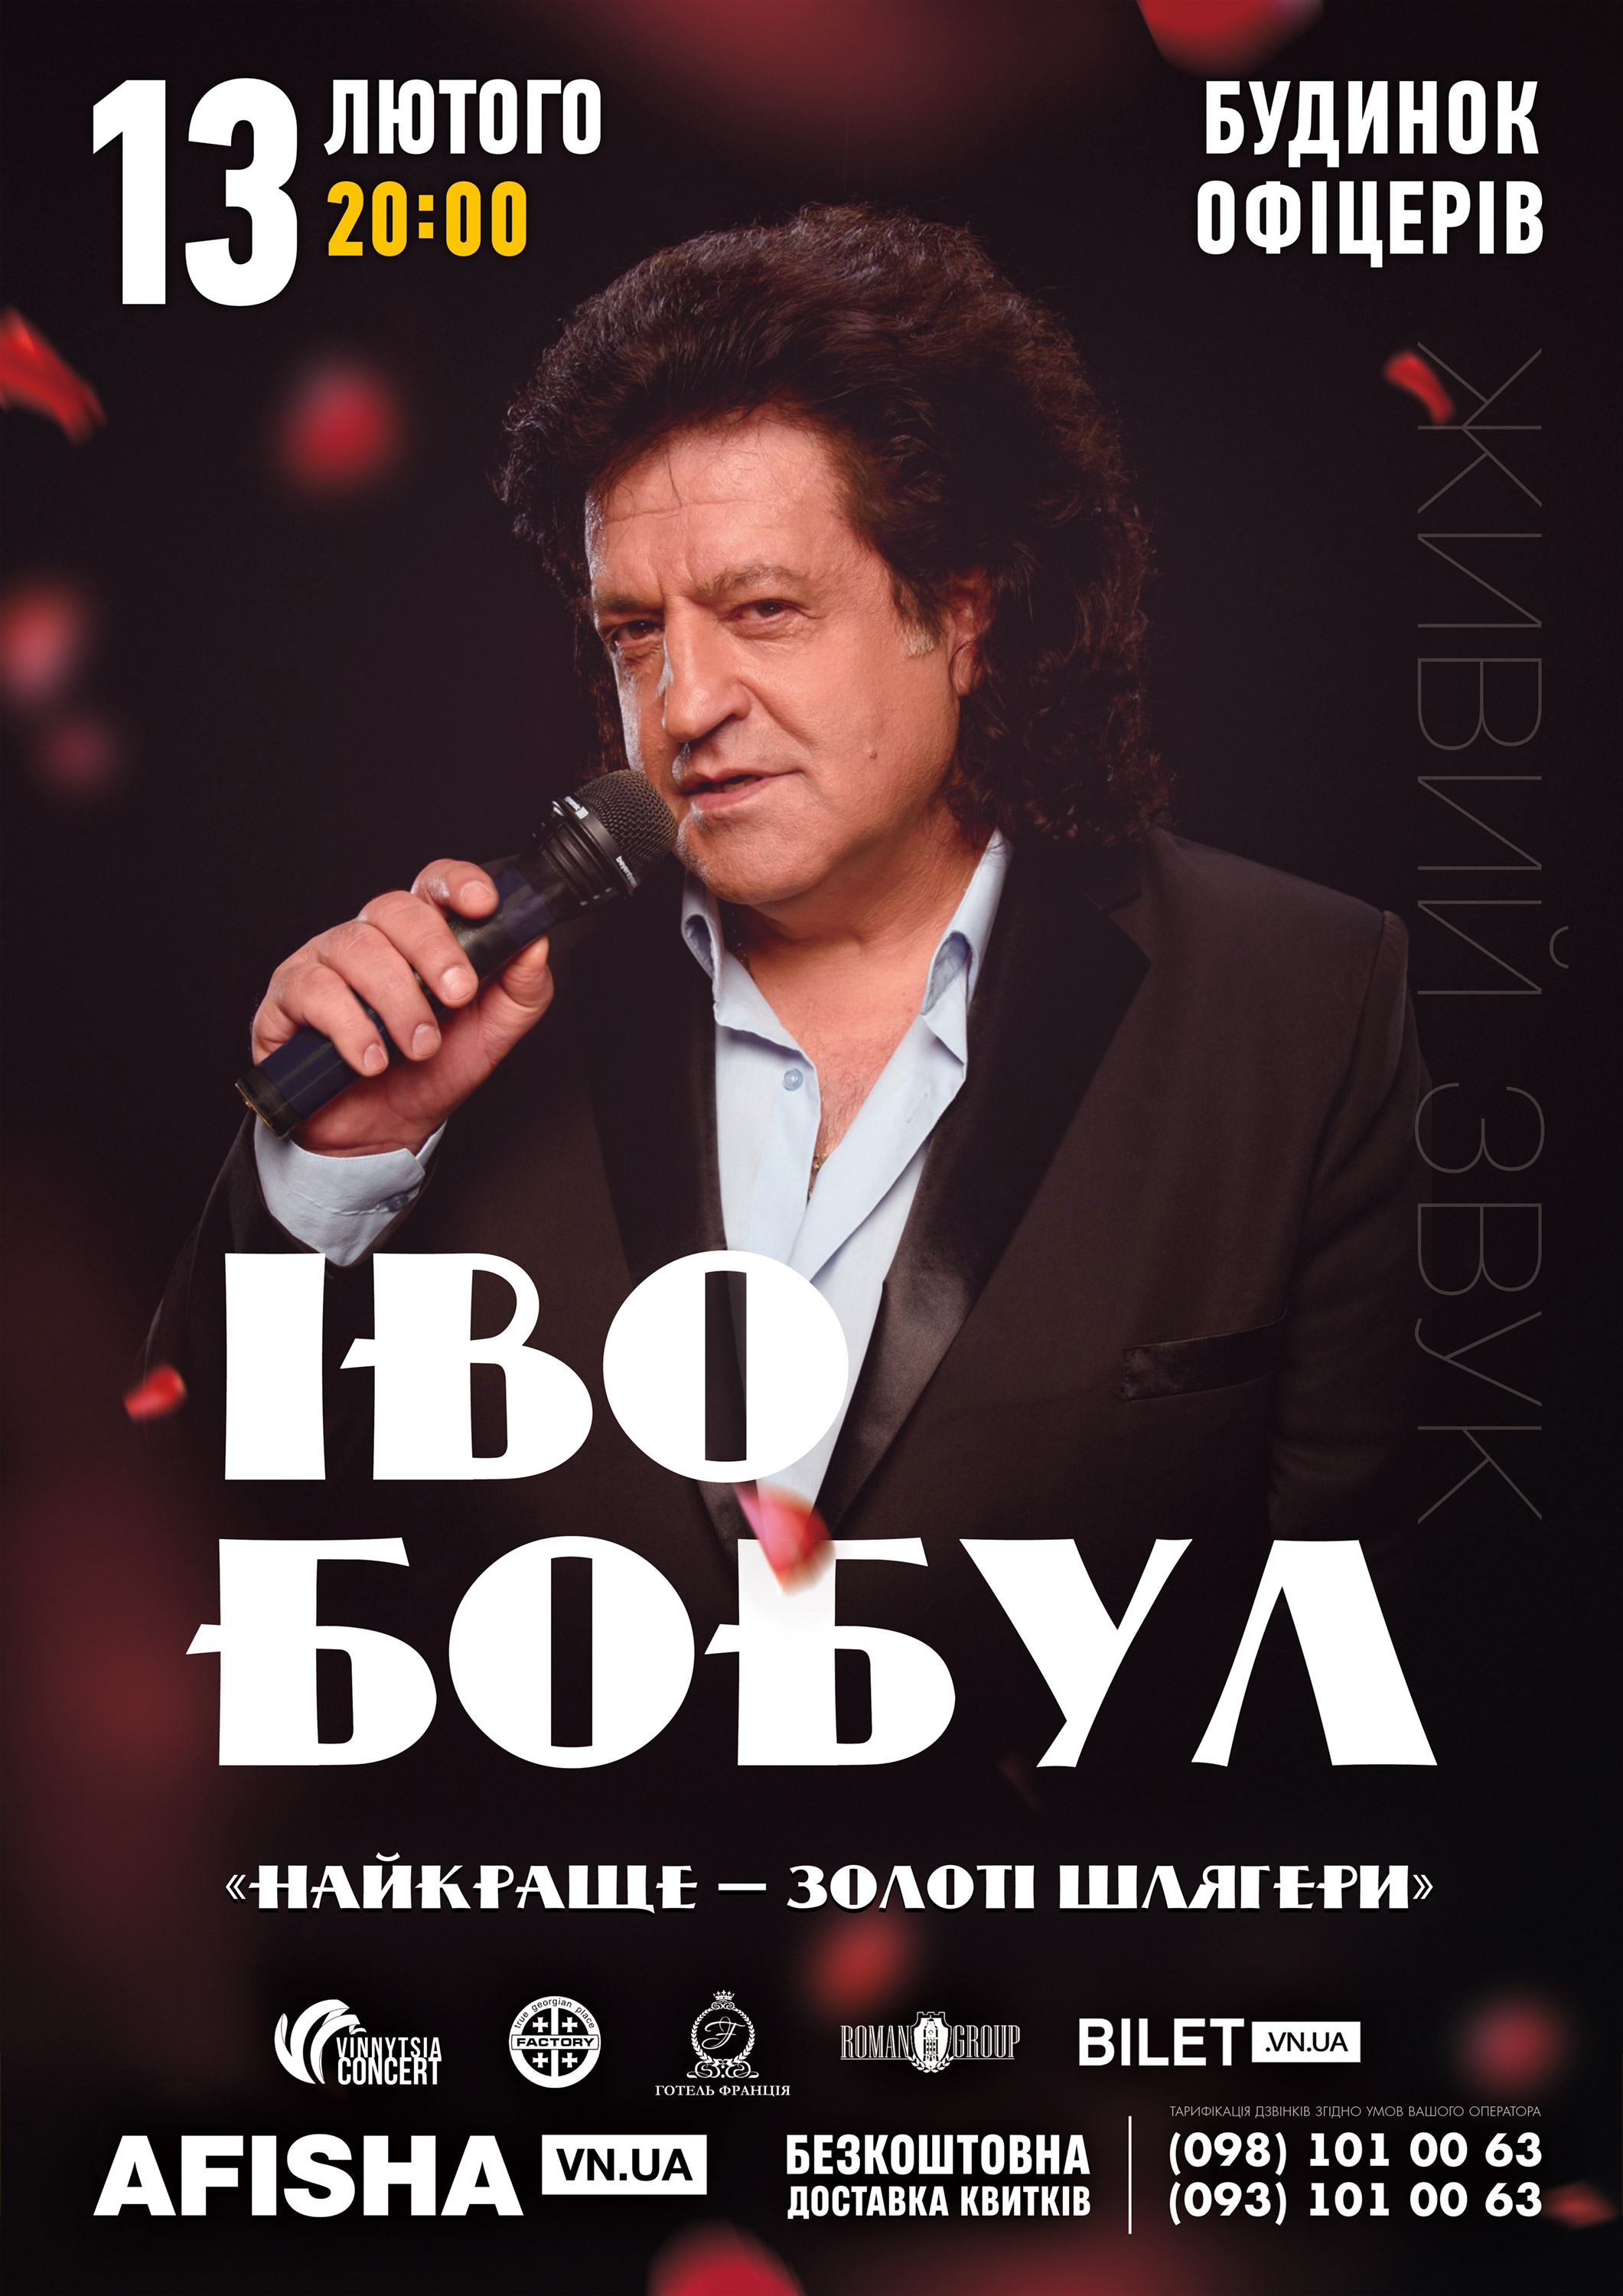 «Все золото світу» для вінничан! Іво Бобул 13 лютого приїде з великим сольним концертом